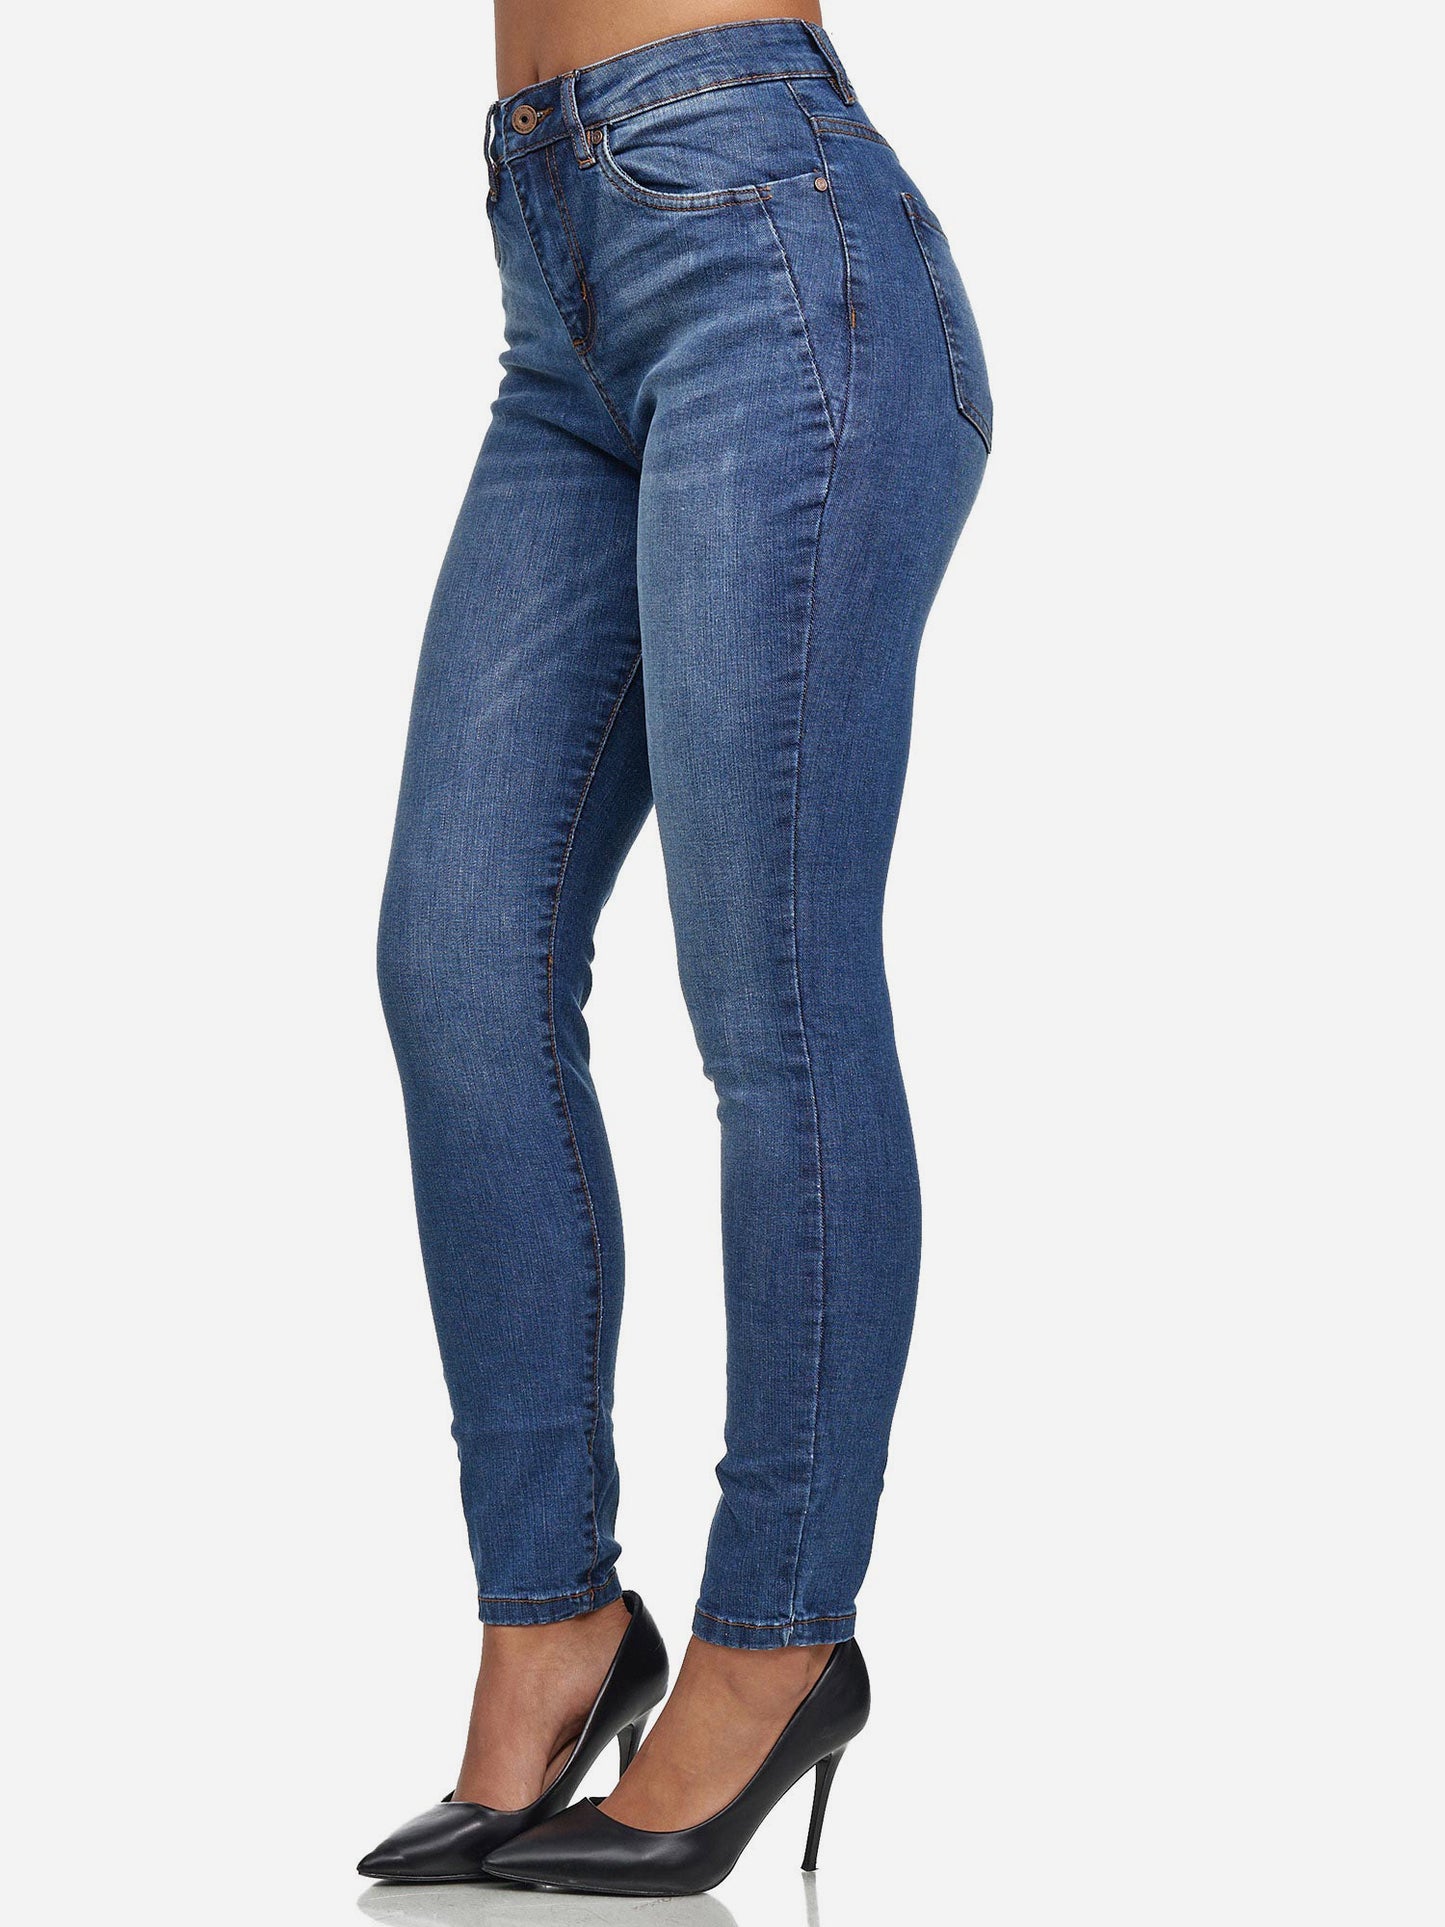 Tazzio Damen Skinny Fit High Waist Jeans F107